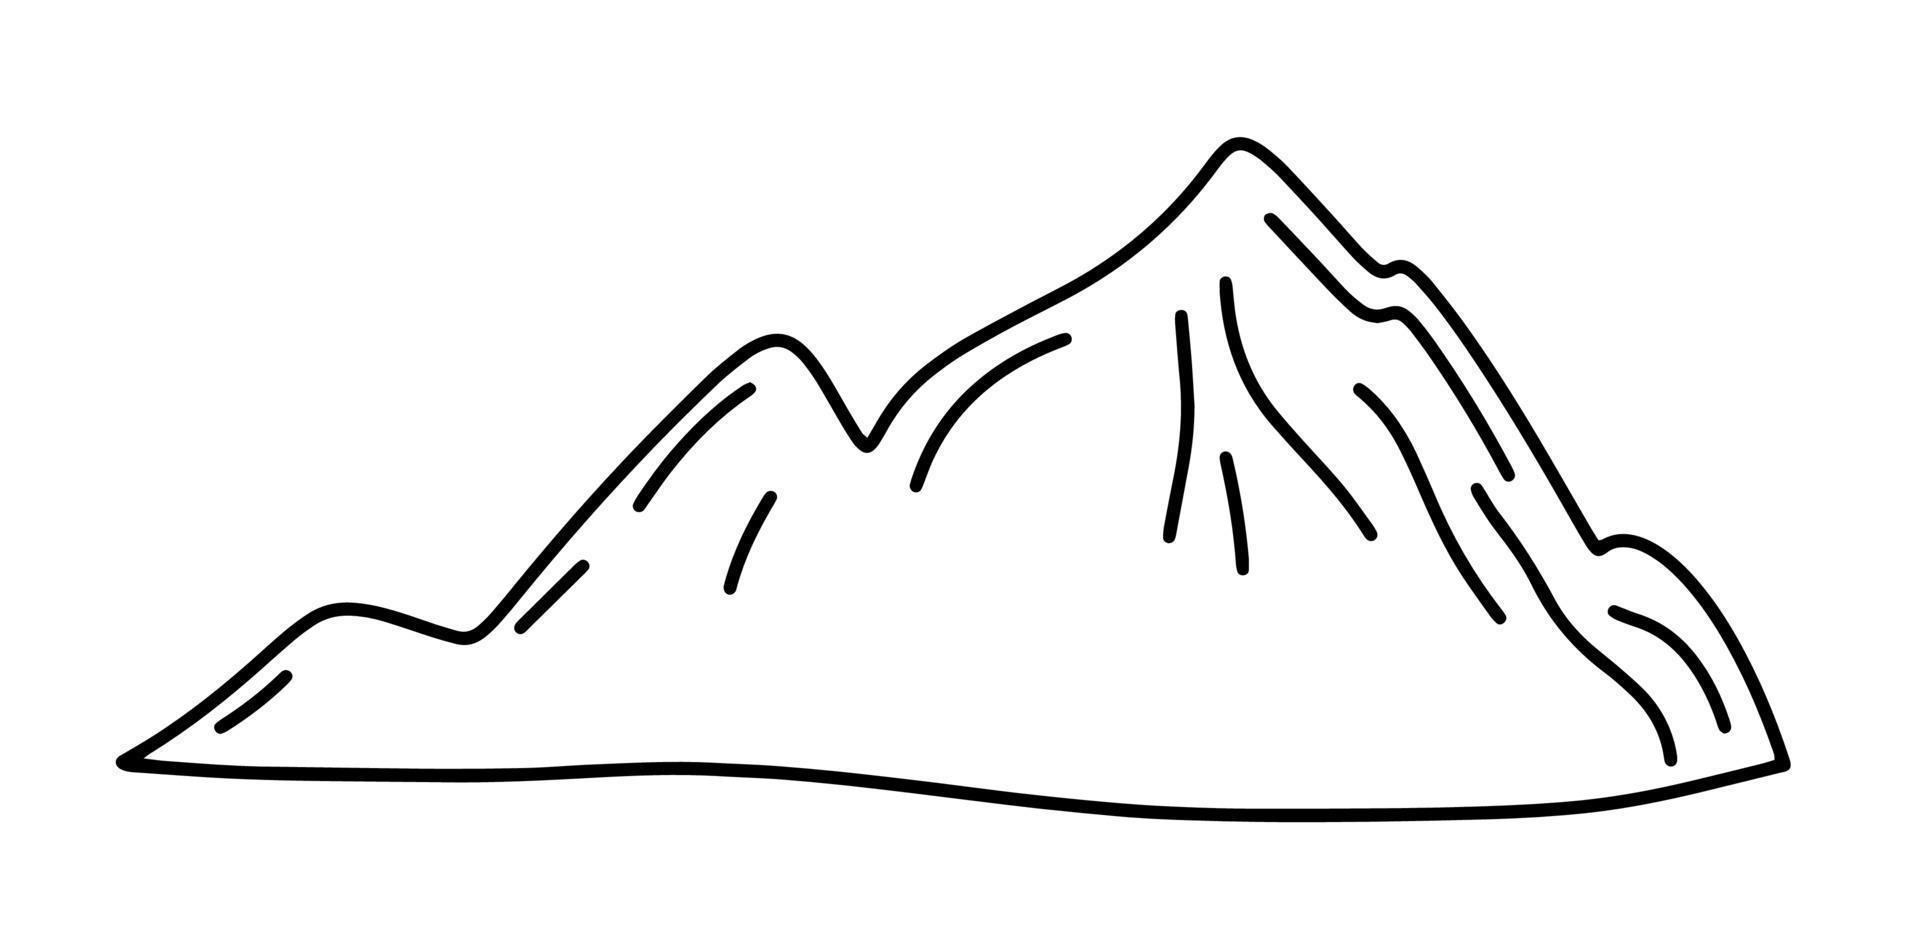 sommets de montagne, rochers, icônes de montagne, figures de montagne, éléments de conception de logo, illustration vectorielle style minimaliste et simple, illustration en noir et blanc, moderne vecteur